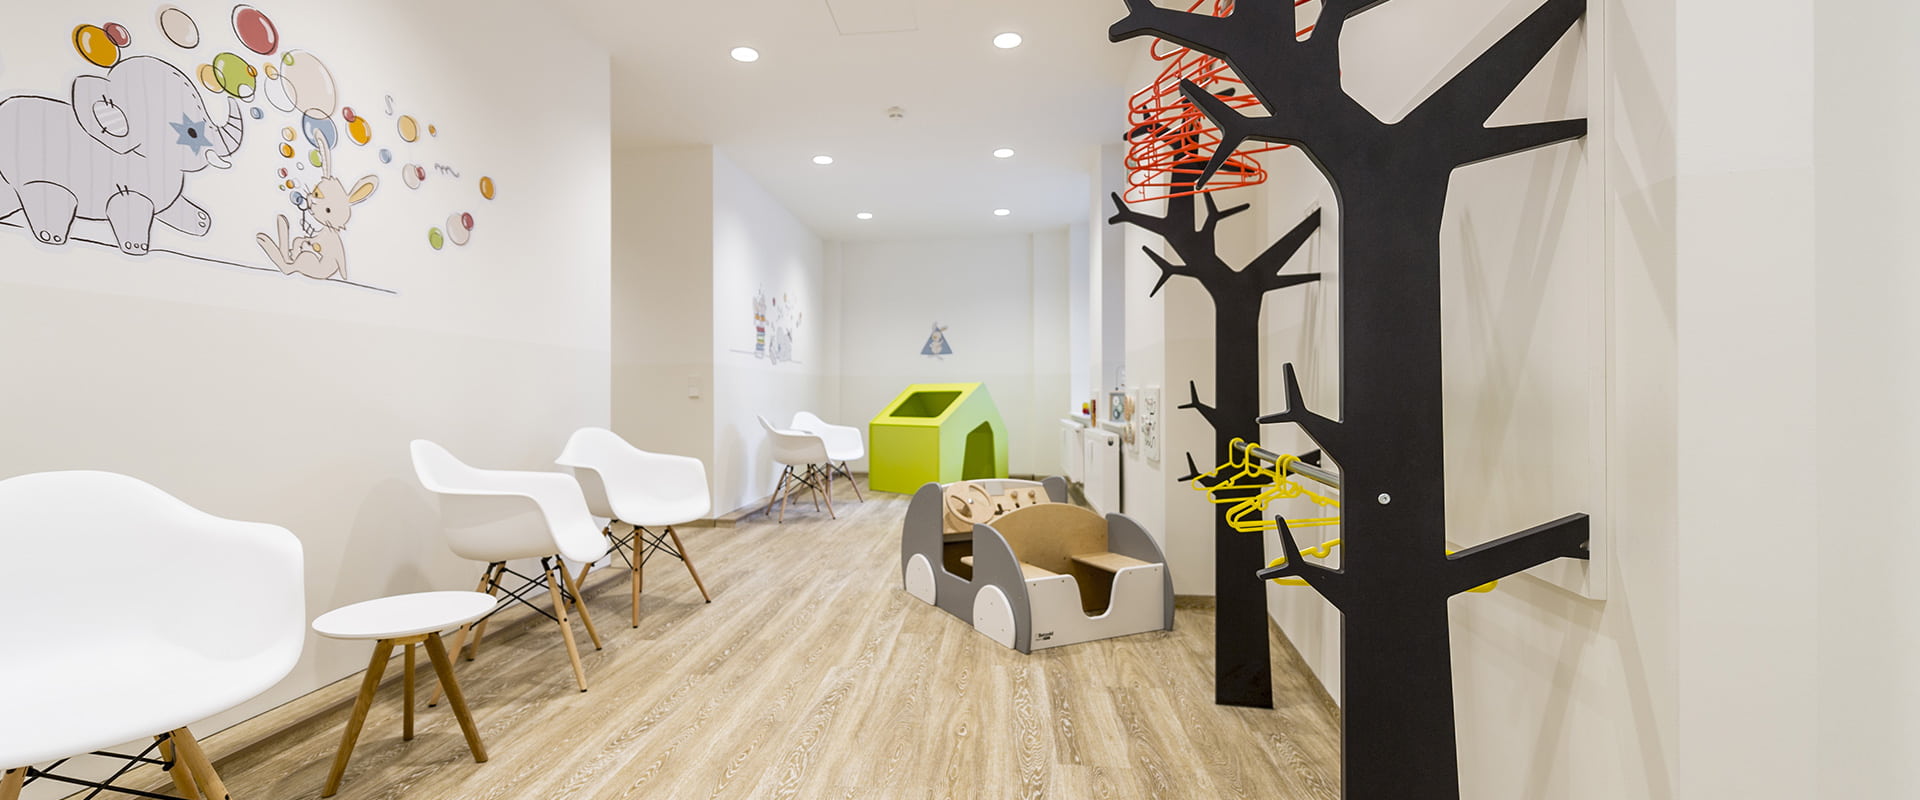 Kinderarztpraxis Hussack Leipzig Wartezimmer mit kinderfreundlichen Wandbildern, einer Garderobe in Form von Bäumen und einem Spielzeug-Auto